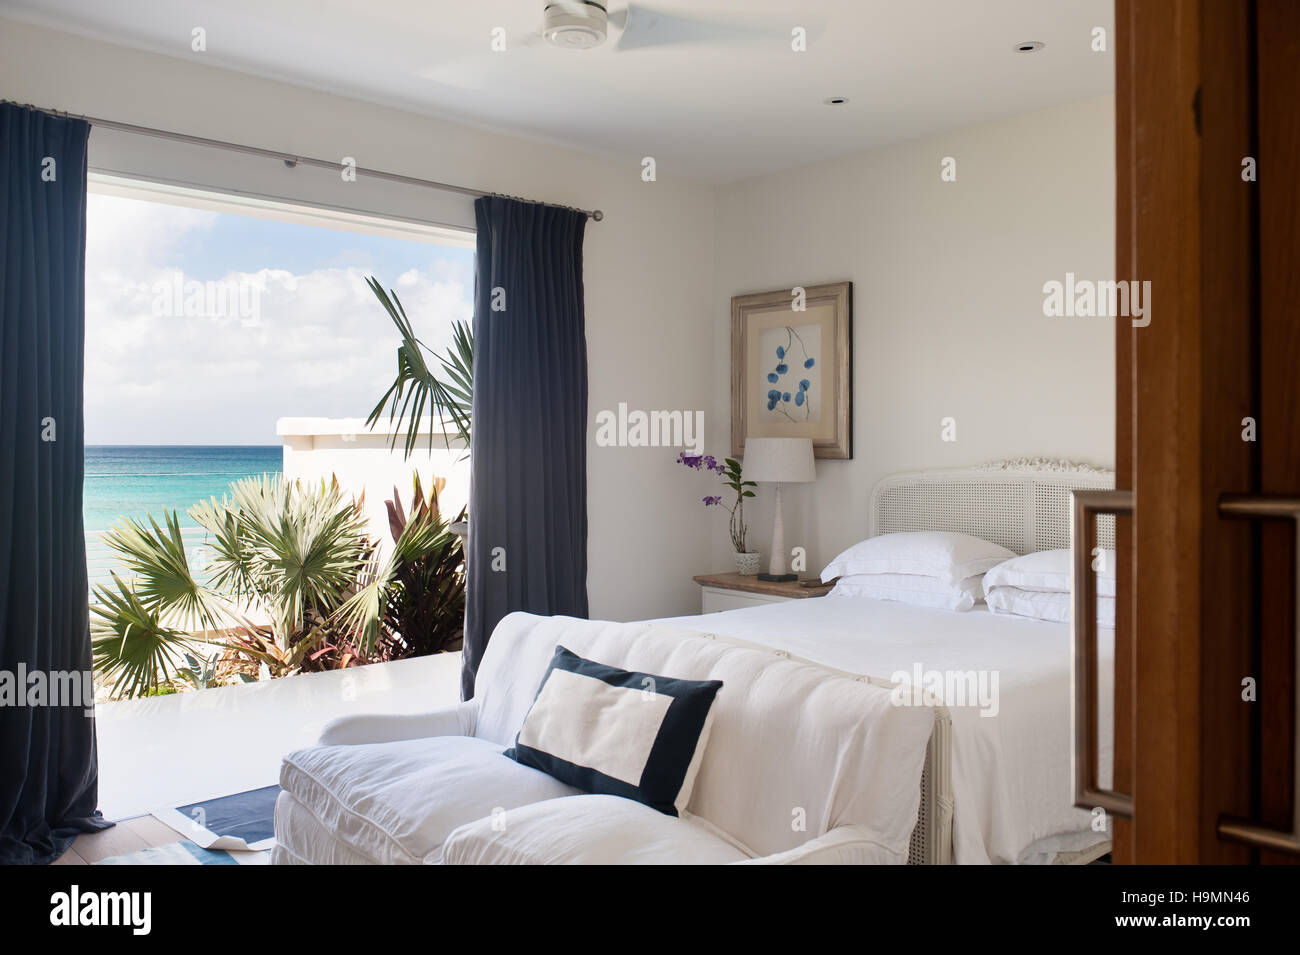 Dormitorio con vista al mar, Barbados, Indias Occidentales, el Caribe Foto de stock